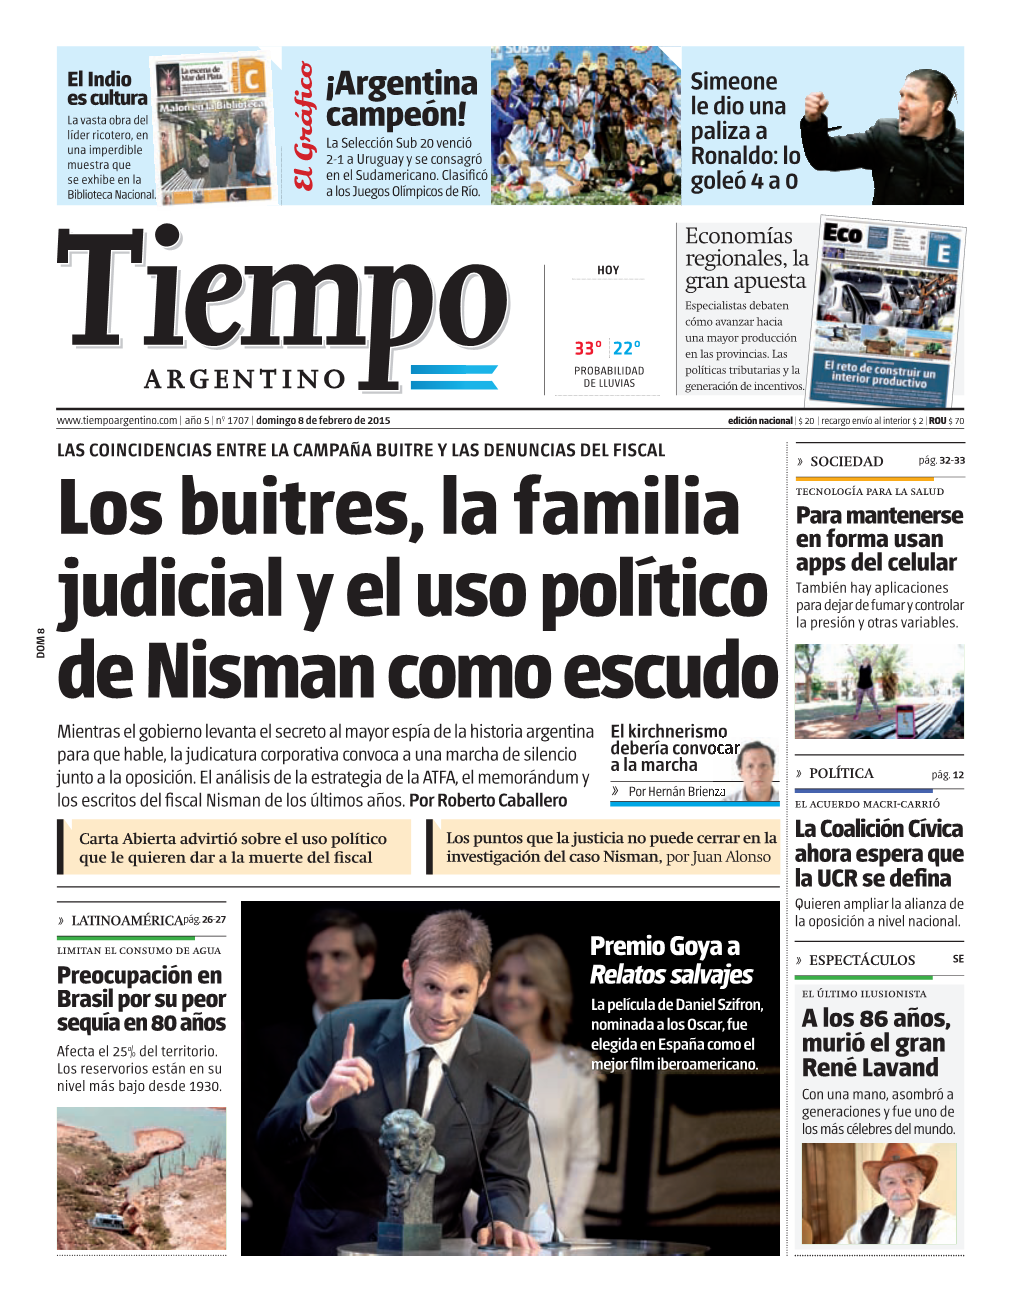 Los Buitres, La Familia Judicial Y El Uso Político De Nisman Como Escudo